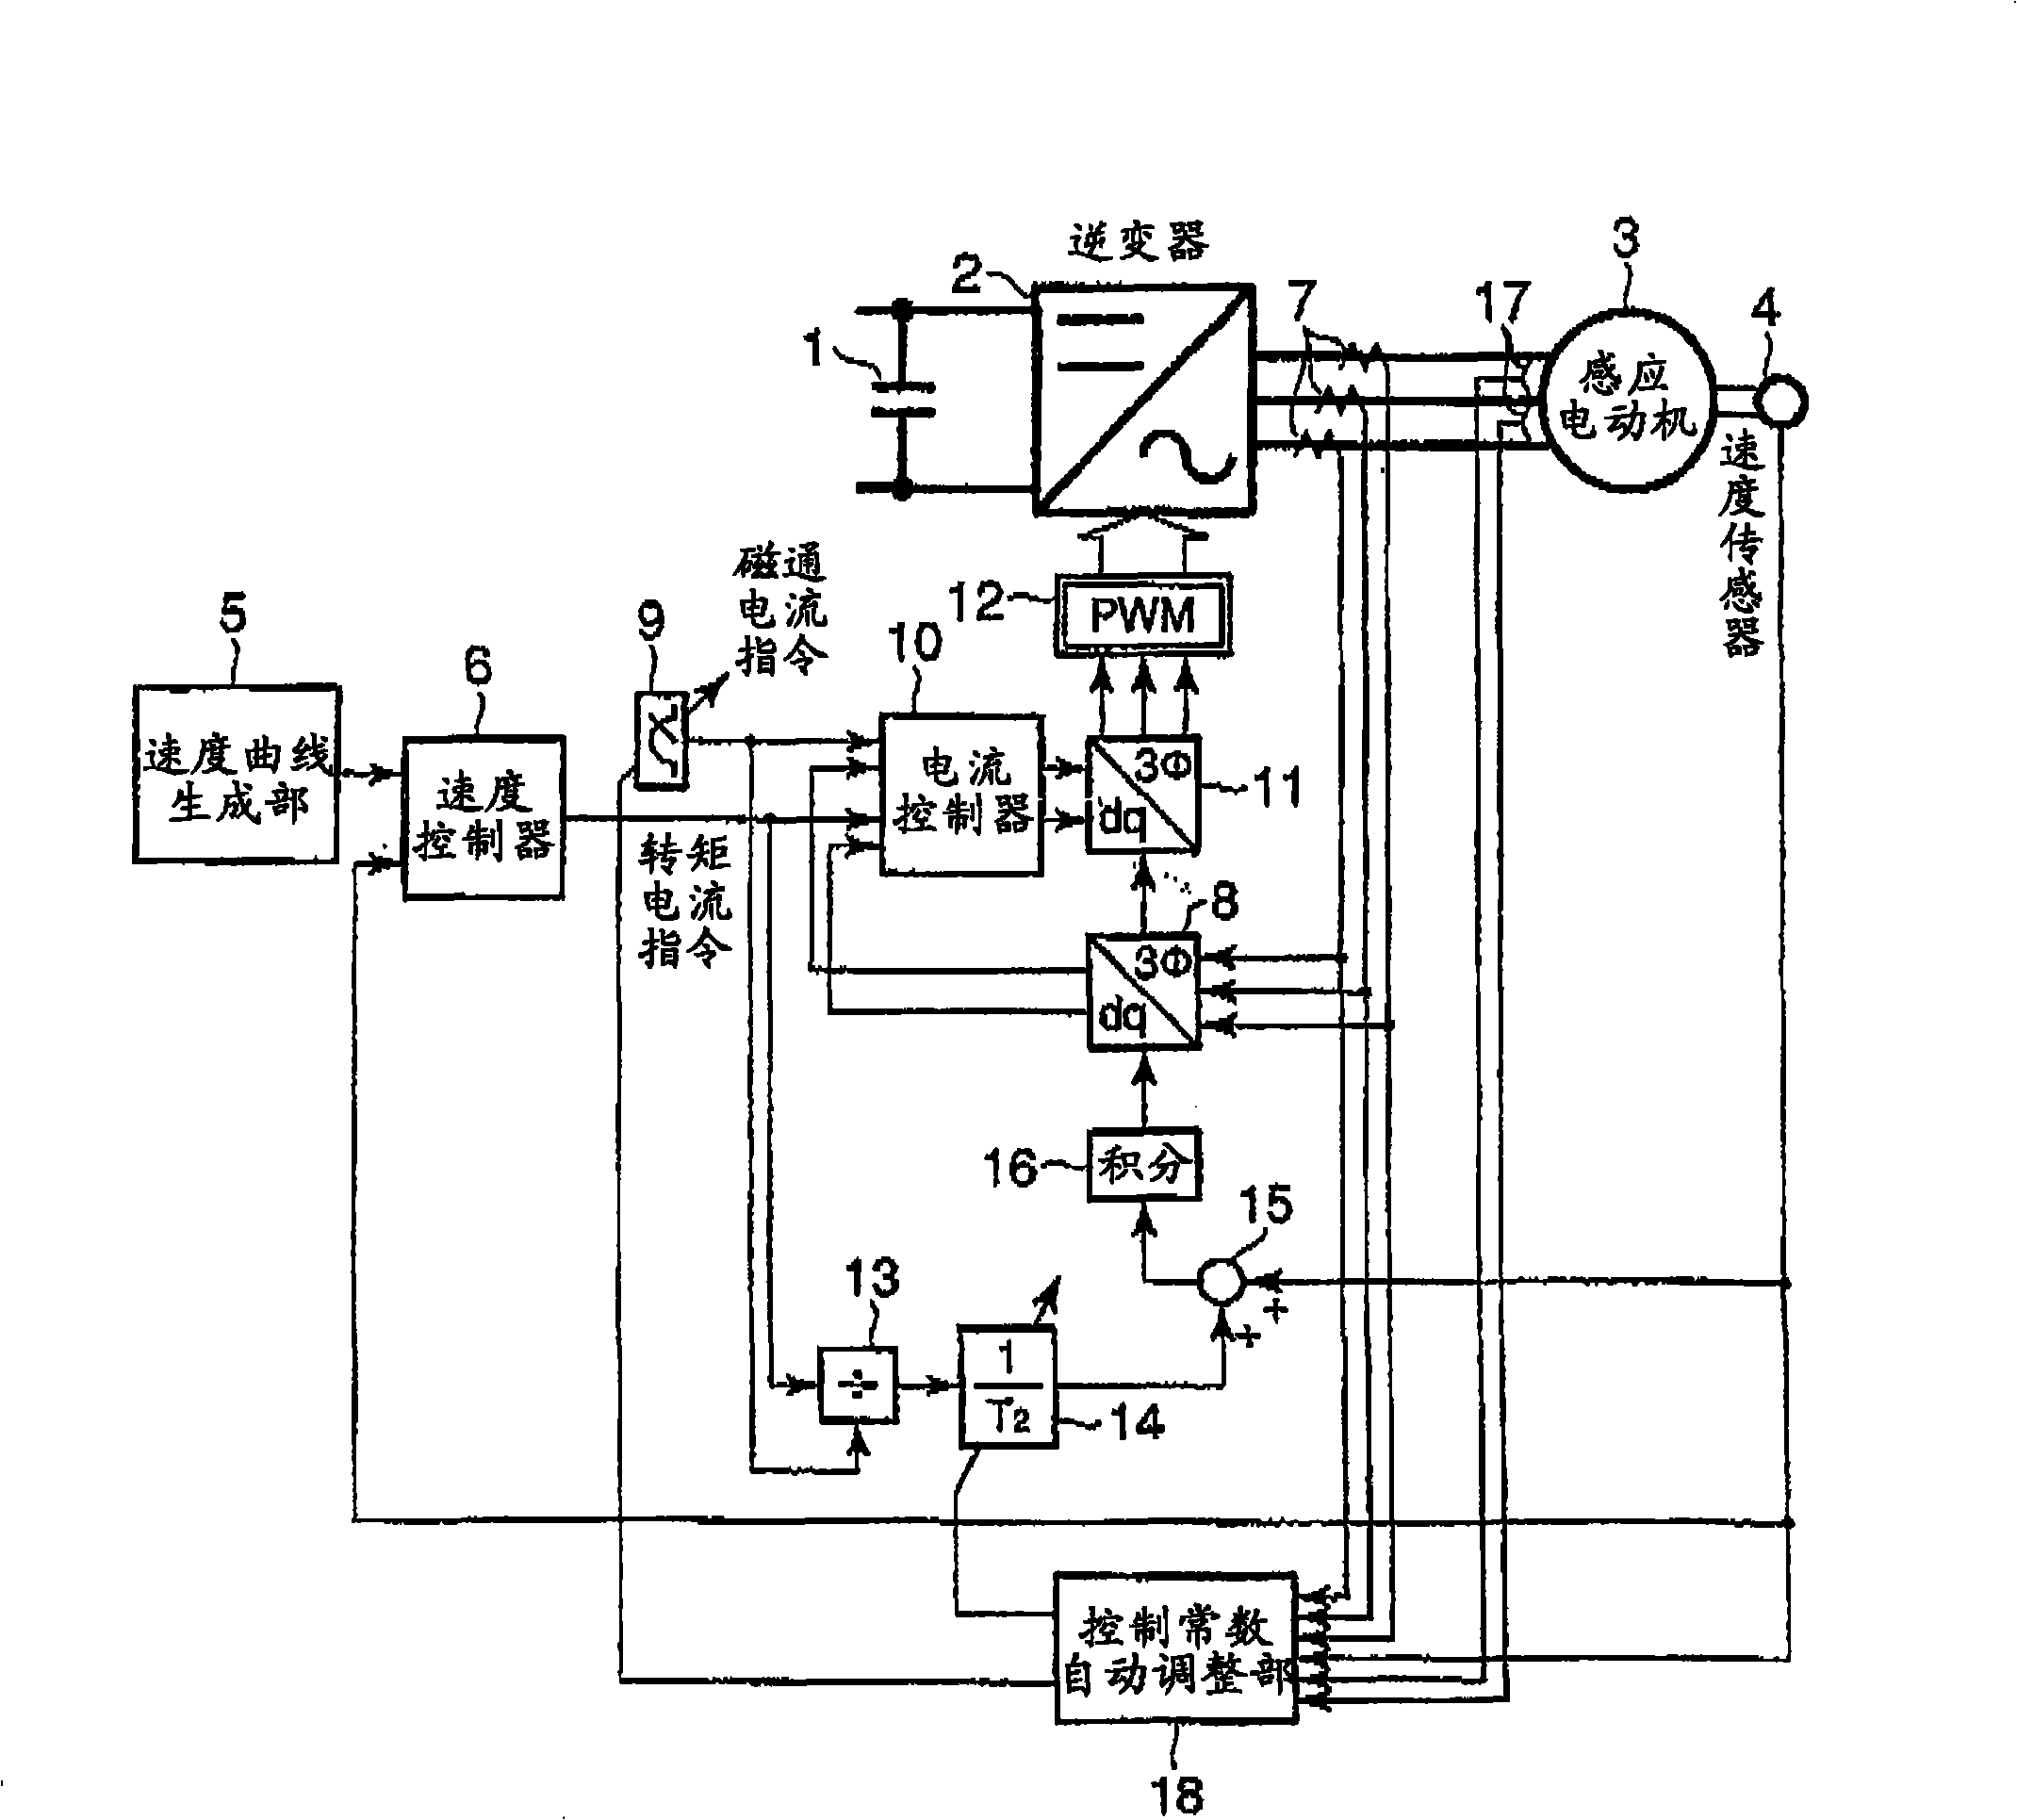 Motor control apparatus of elevator